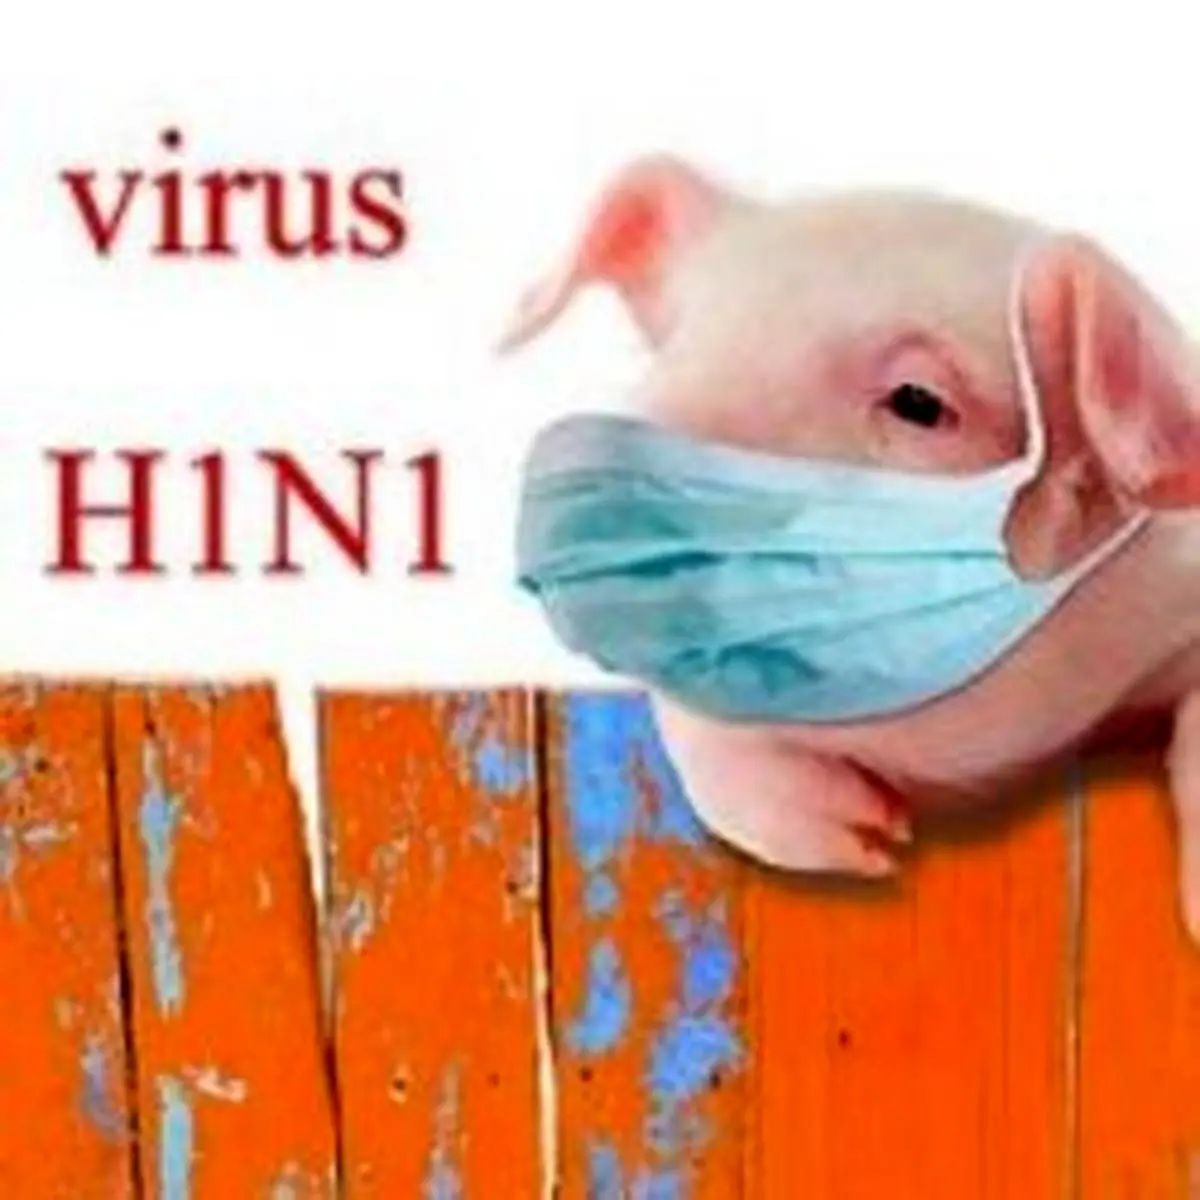 با آنفلوآنزای خوکی بیشتر آشنا شوید